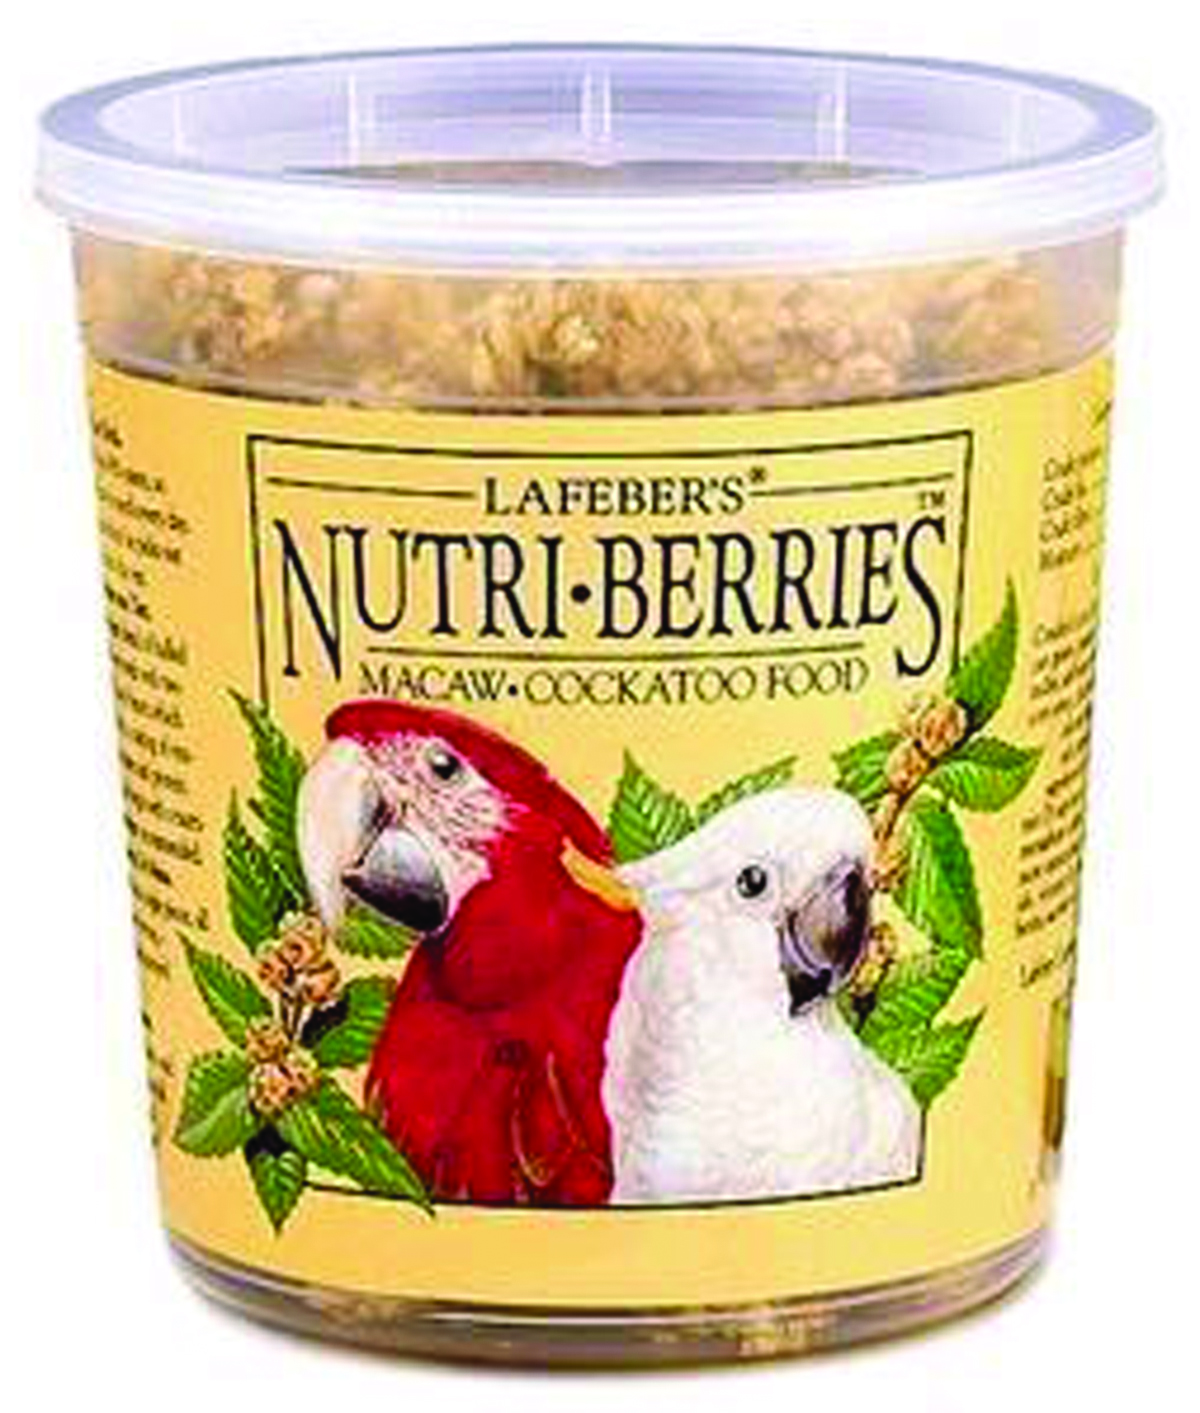 LaFeber's Nutri-Berries MaCaw Food, 12 oz